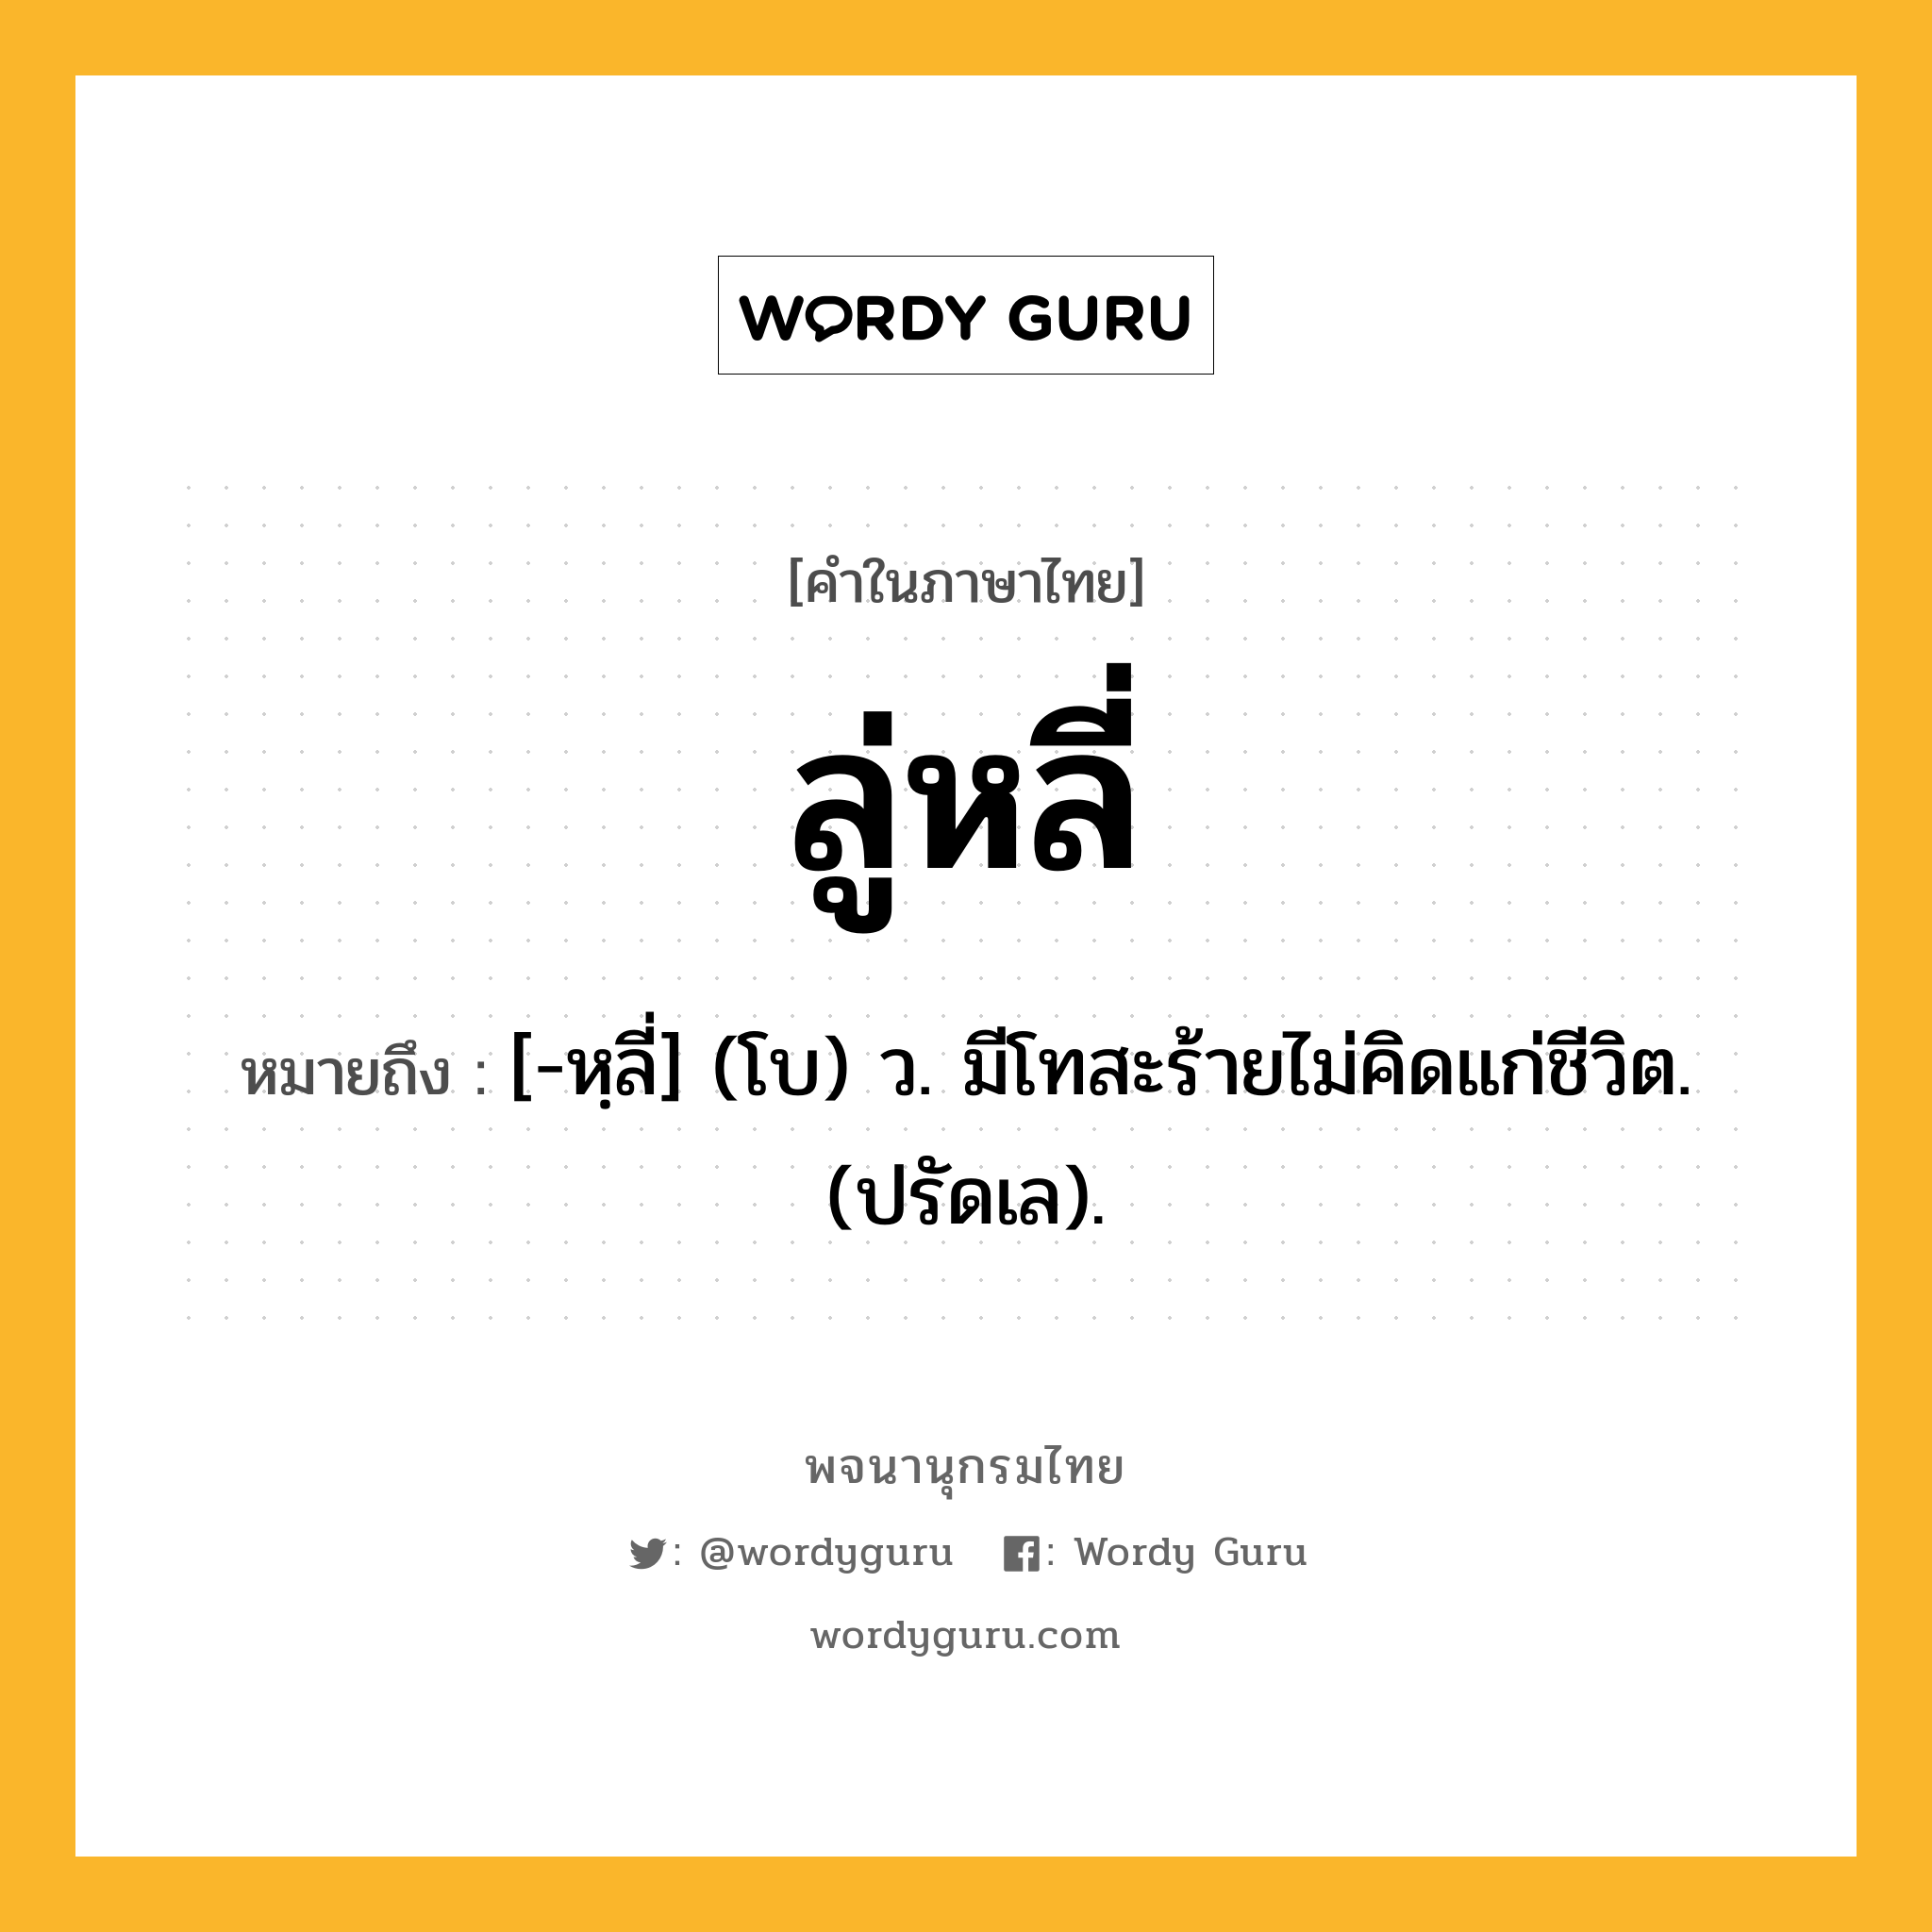 ลู่หลี่ ความหมาย หมายถึงอะไร?, คำในภาษาไทย ลู่หลี่ หมายถึง [-หฺลี่] (โบ) ว. มีโทสะร้ายไม่คิดแก่ชีวิต. (ปรัดเล).